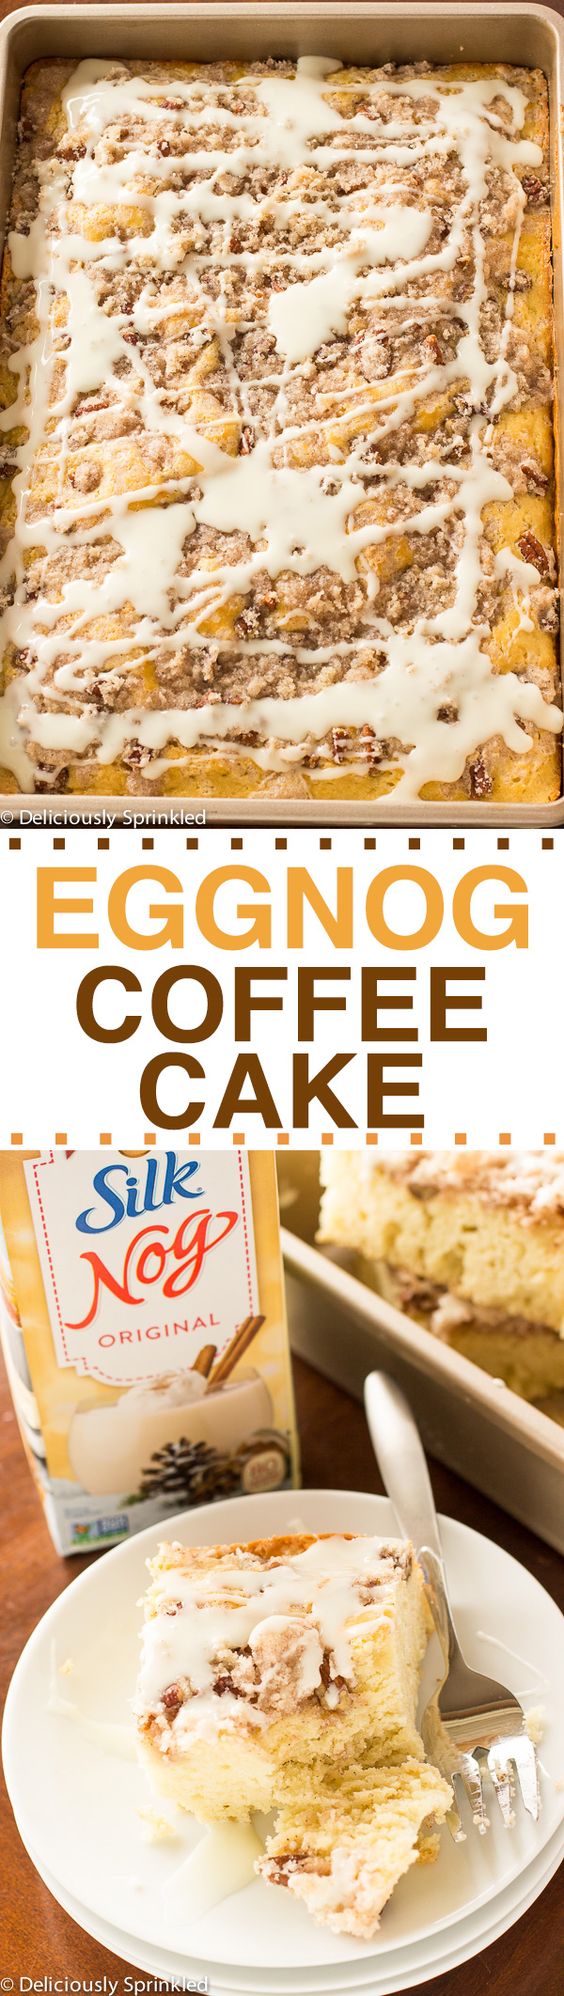 EGGNOG COFFEE CAKE RECIPE